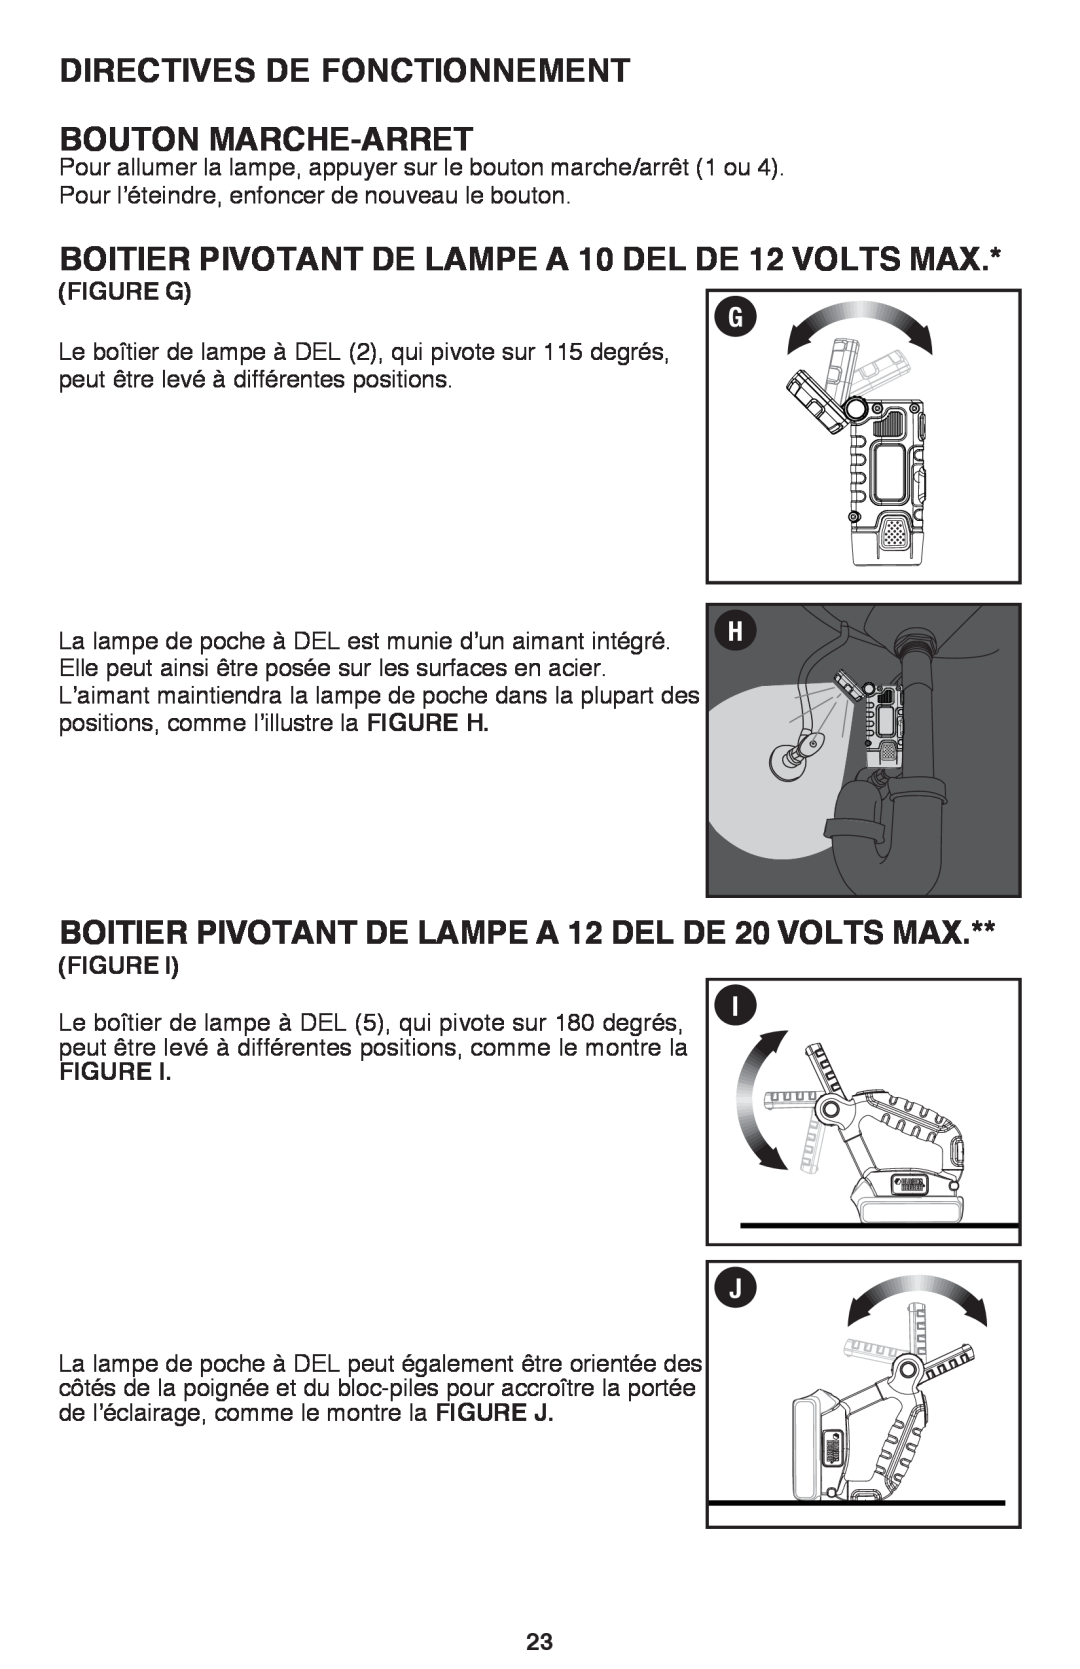 Black & Decker BDCF12, BDCF20 manual Directives De Fonctionnement Bouton Marche-Arret, FigURE G 